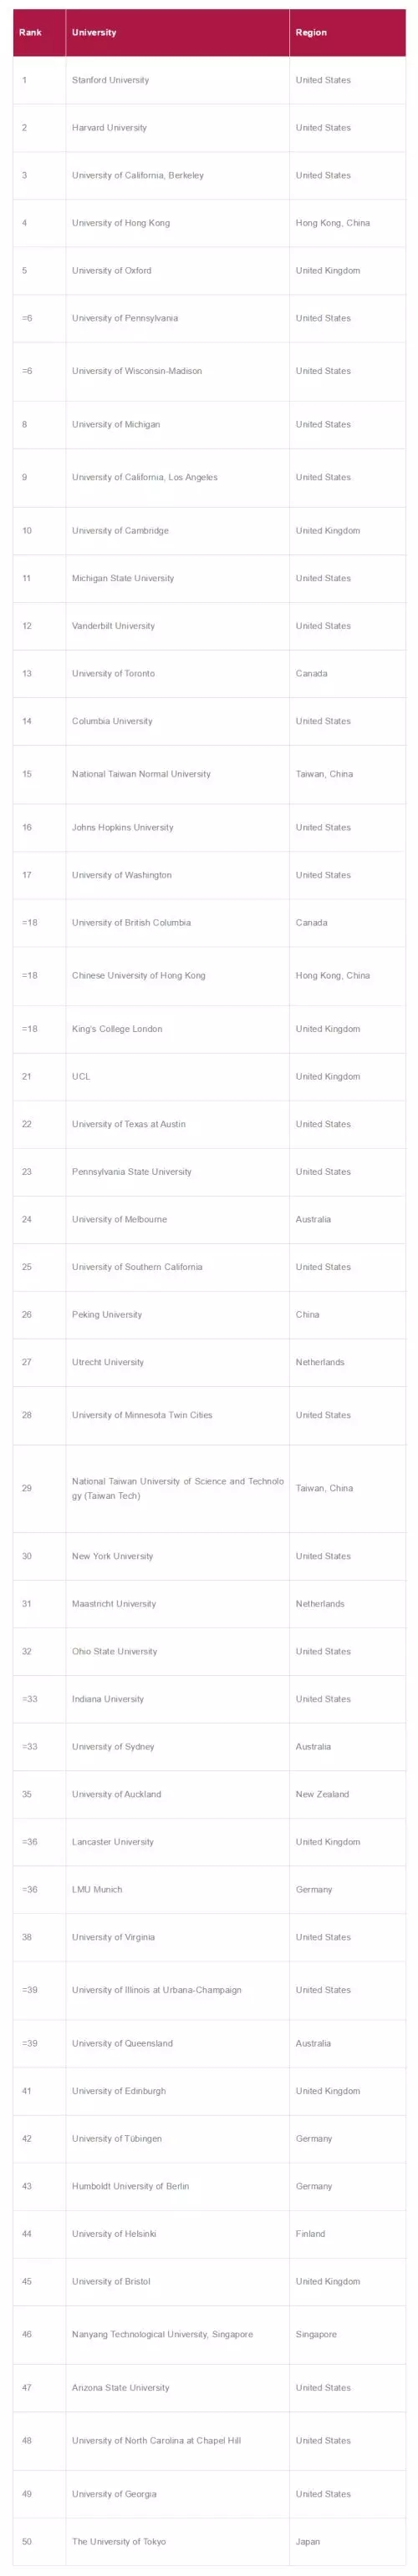 美国大学专业排名